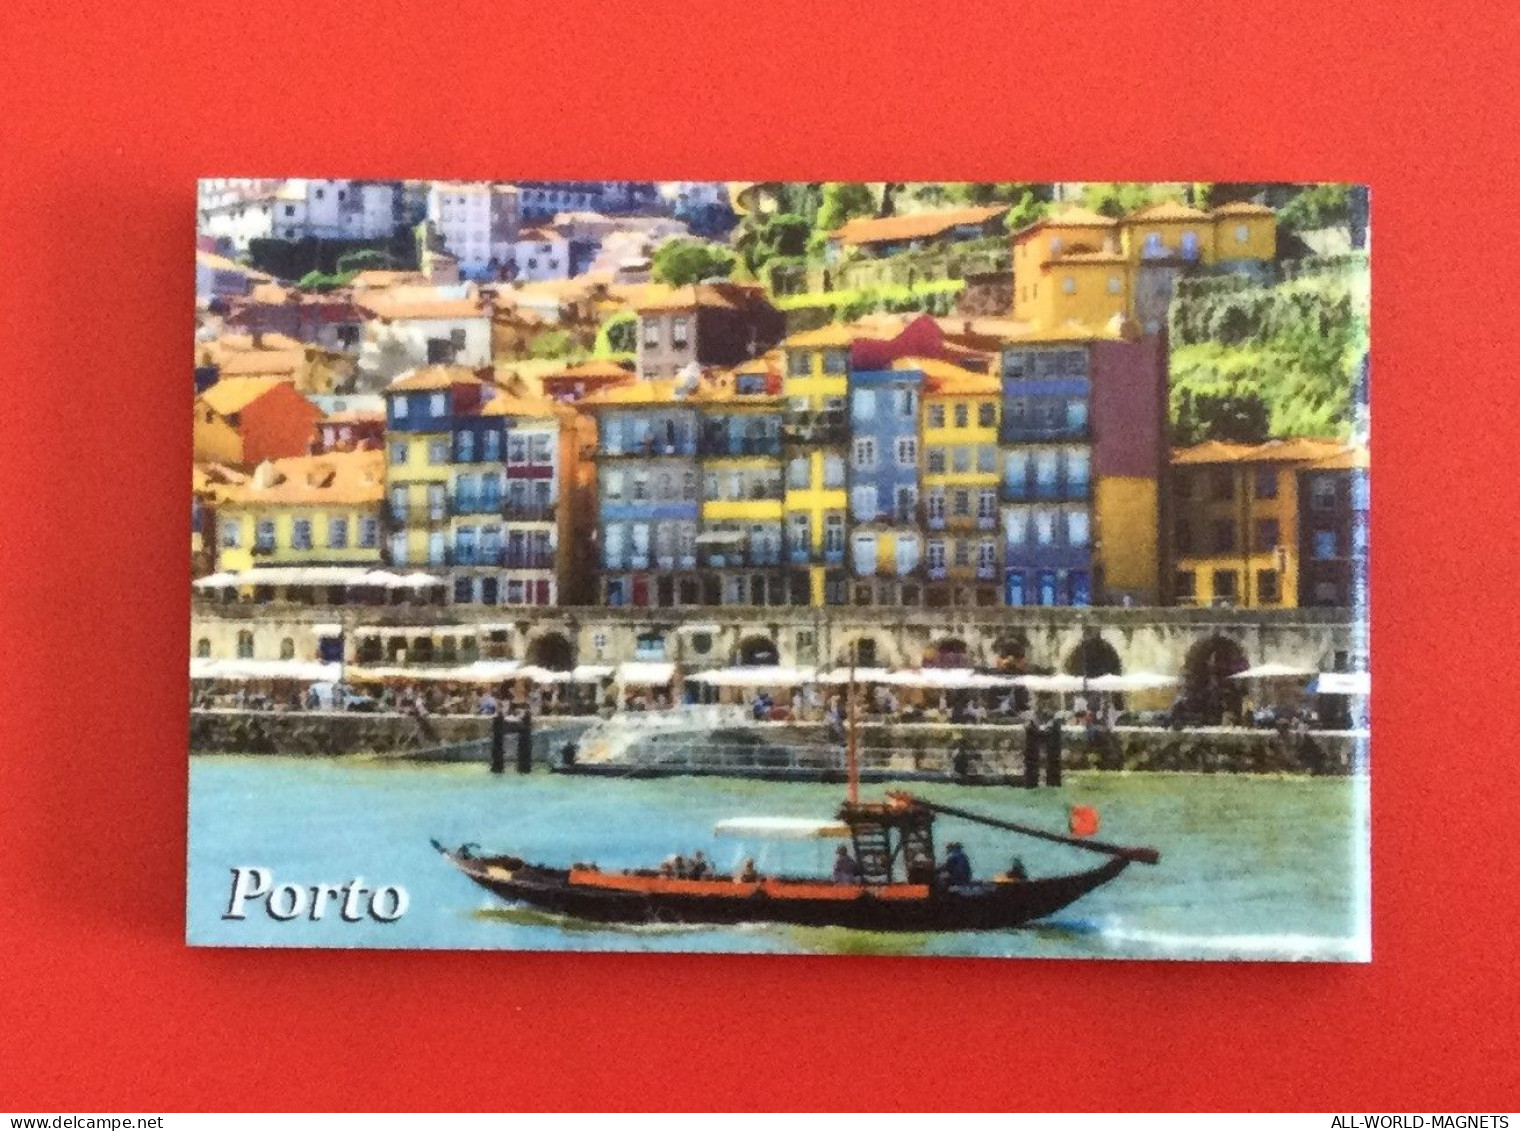 Porto Duoro River Boat Porto City Vew Portugal Souvenir Fridge Magnet - Magnetos